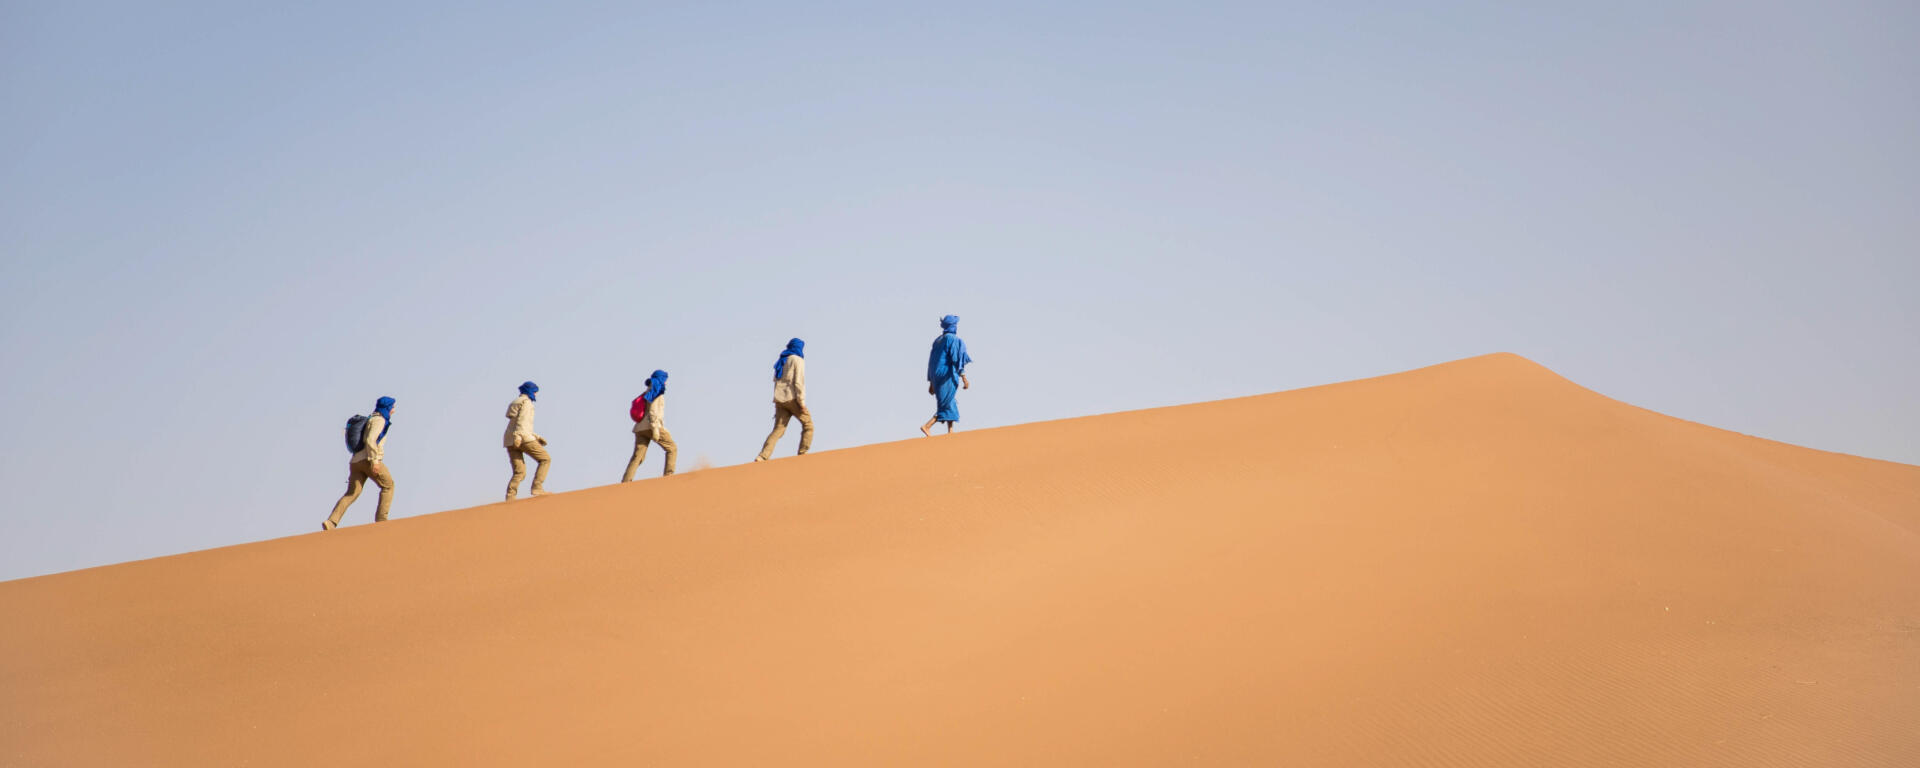 trekking in the desert: how to do it